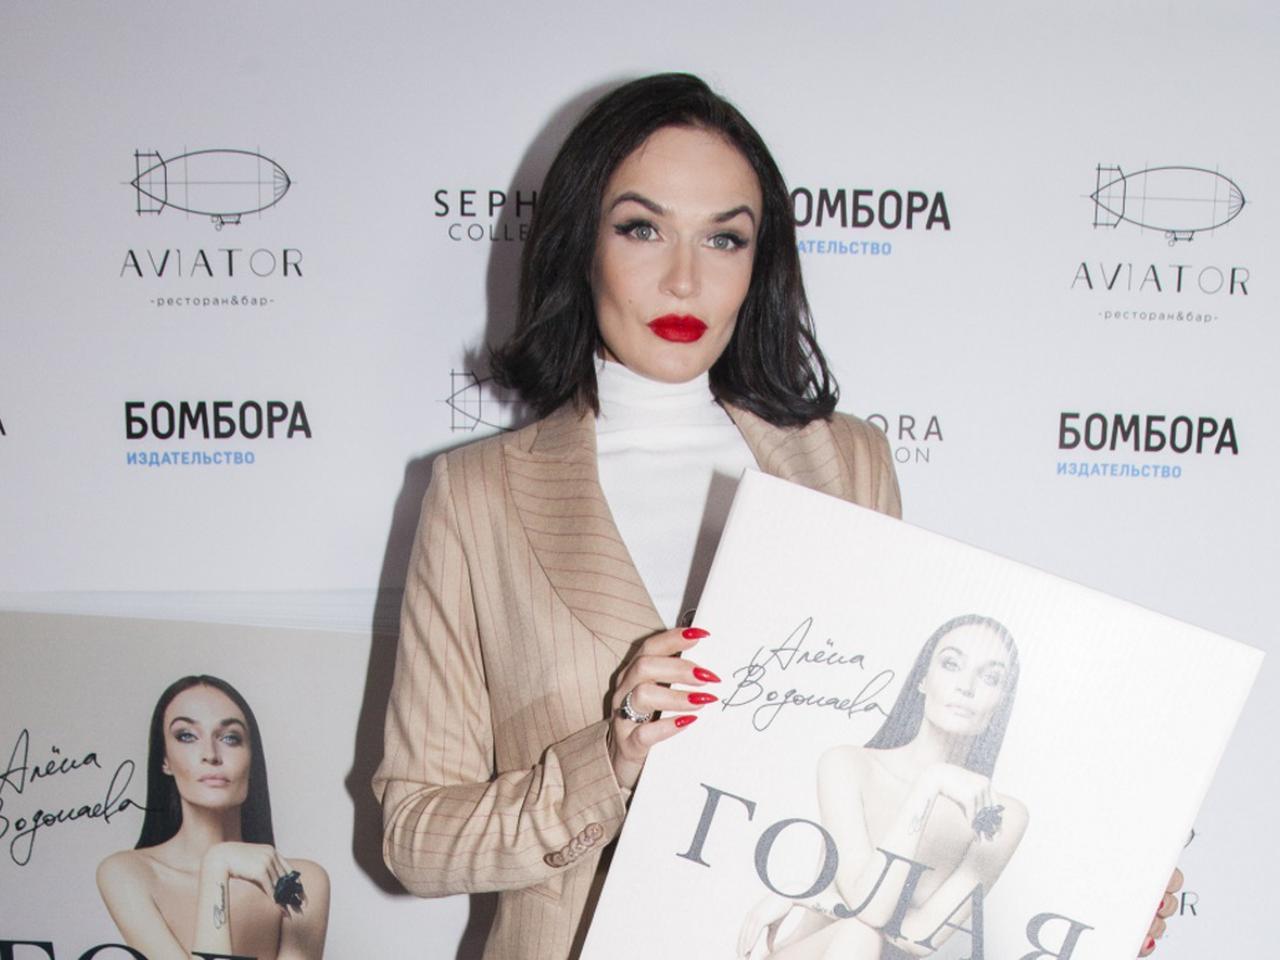 Водонаева пришла на презентацию своей книги «Голая» в стильном брючном  костюме, а Бледанс — в сияющем платье и с бабочками на шее | WMJ.ru